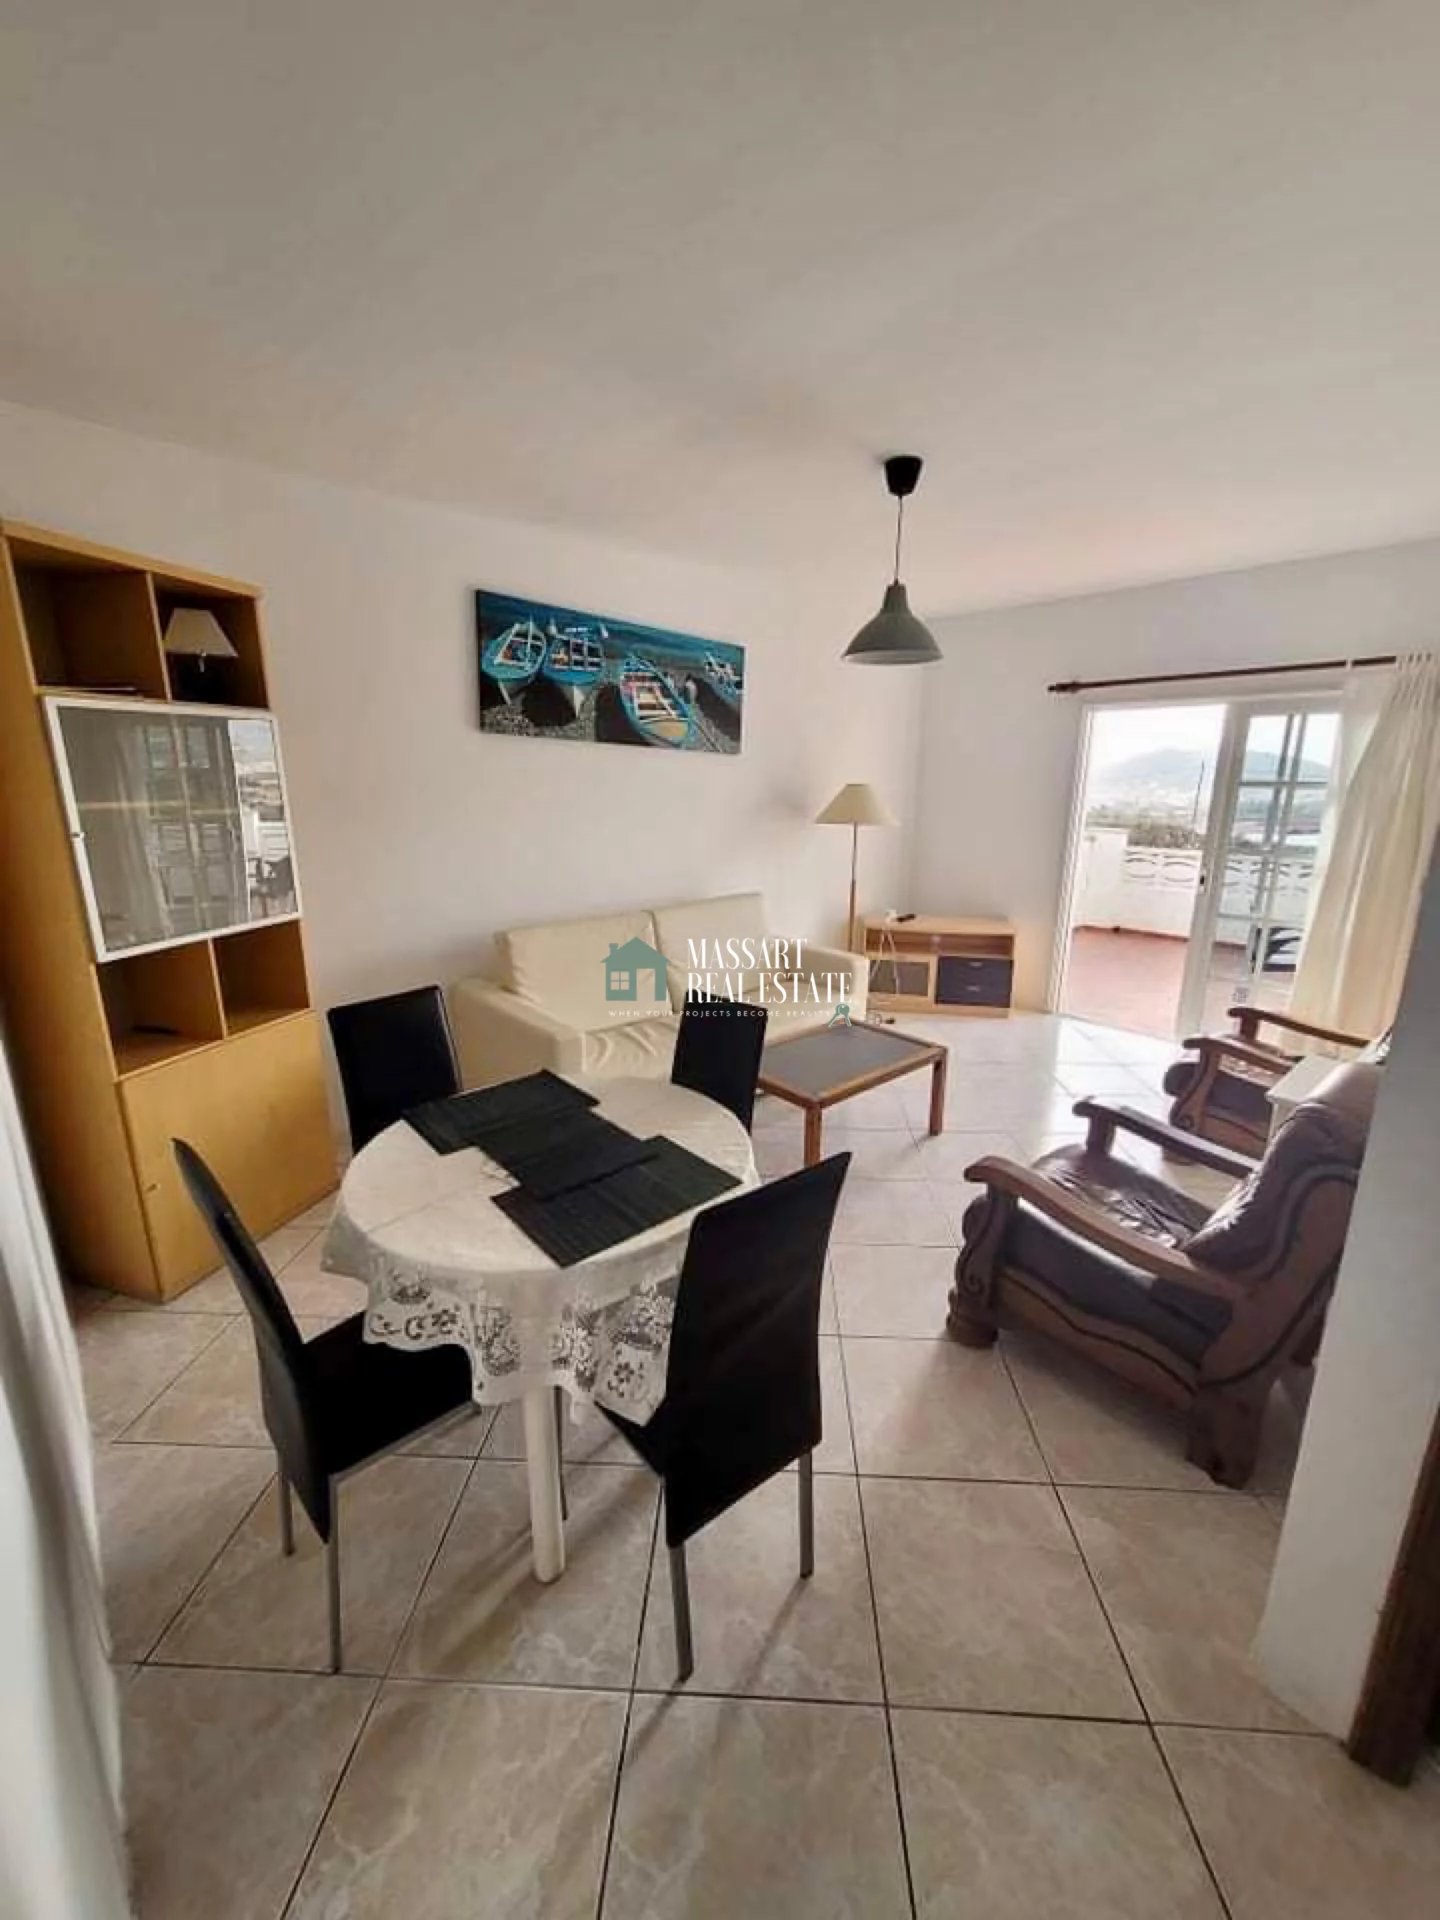 Casa dividida en 4 viviendas ubicada en parcela de 900 m2 en Buzanada, en una zona céntrica y tranquila.